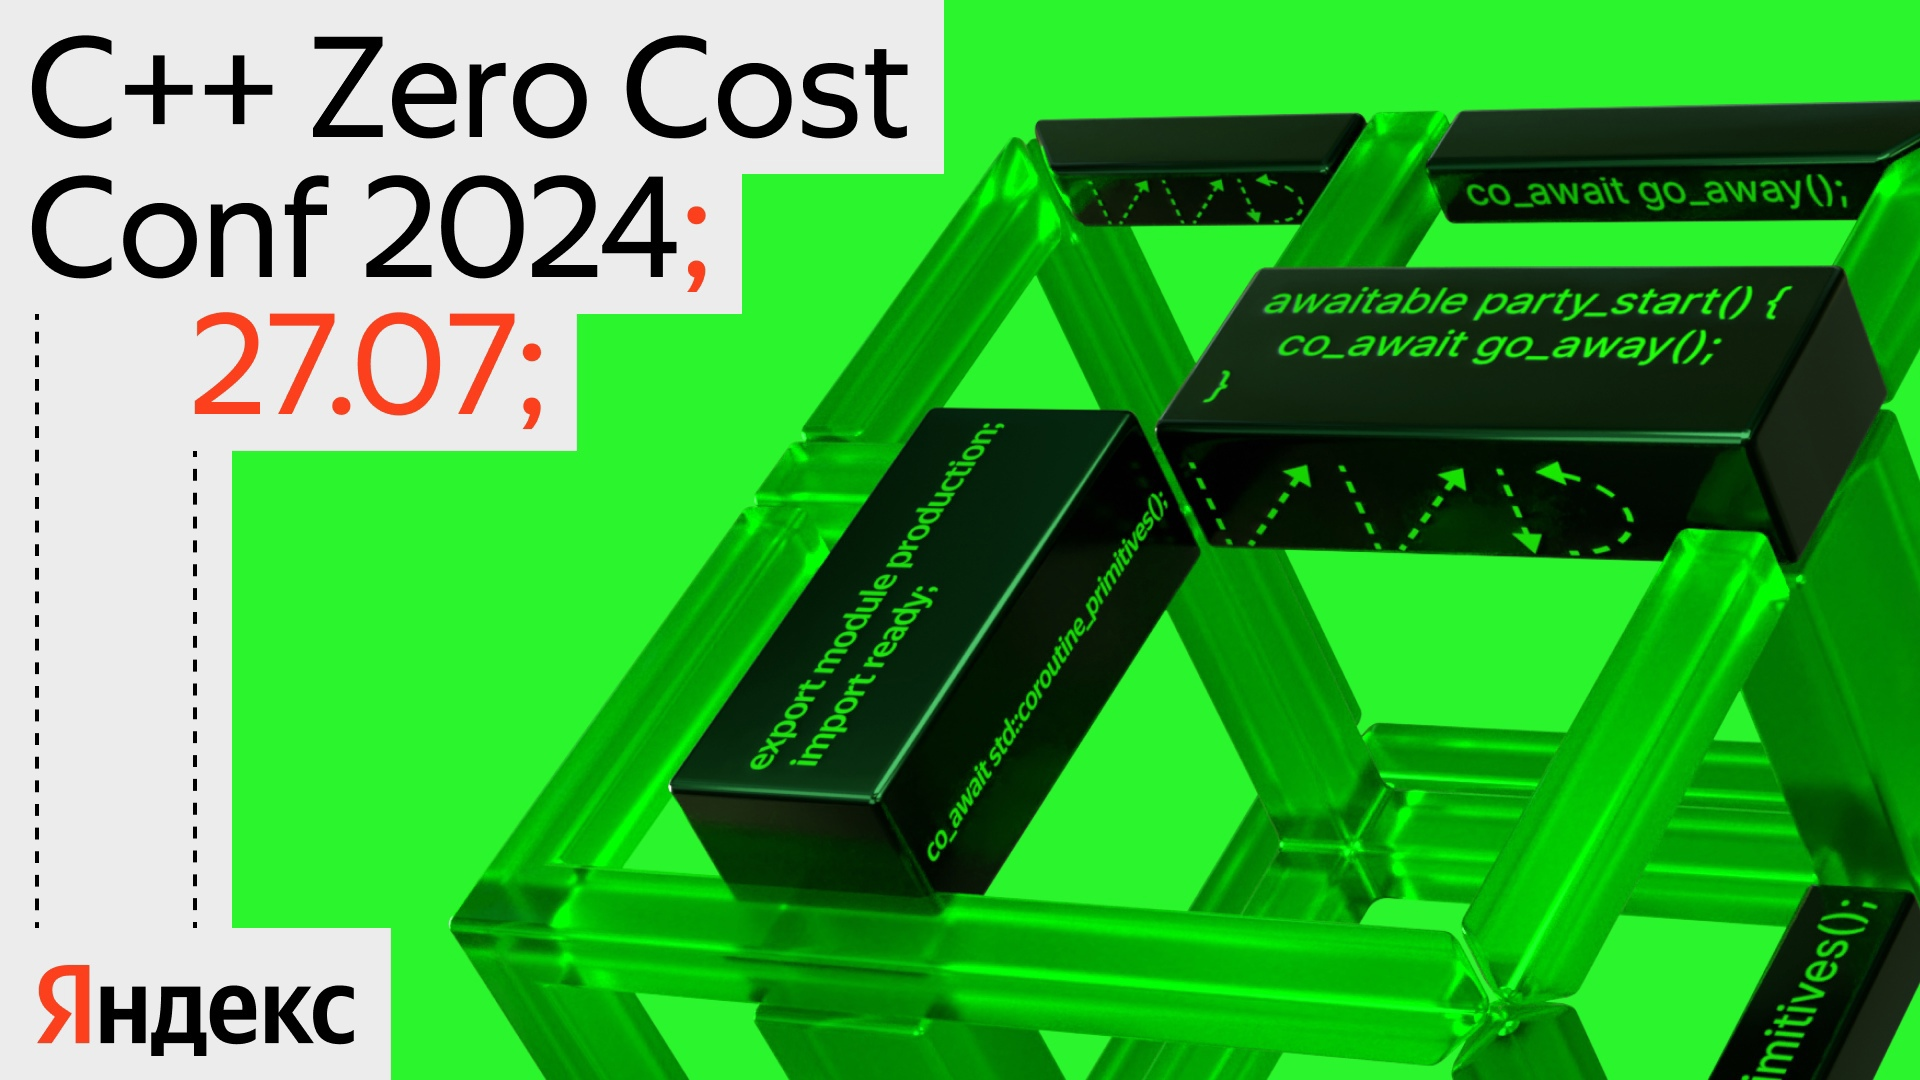 Обложка мероприятия С++ Zero Cost Conf 2024